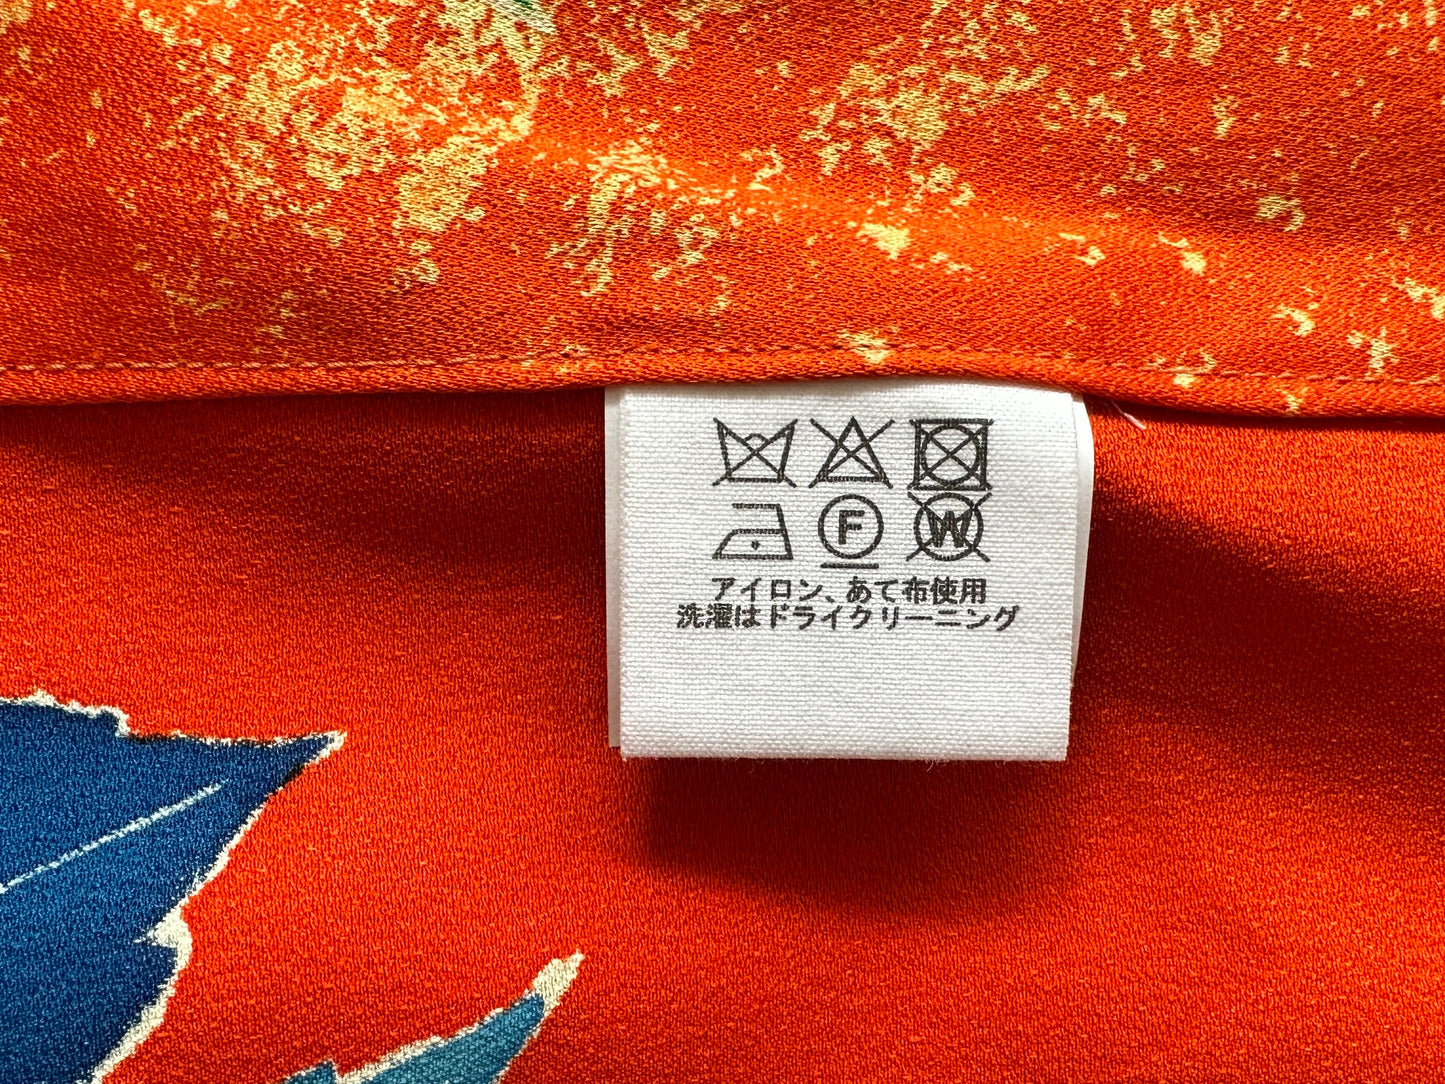 【Levendig oranje, pioen】 Happi jas ＜ Uitstekend ・ zijde ＞ voor mannen, voor vrouwen, Japanse kimono, Japan unisexese kleding, unisex, Japanse geschenken, originele ontwerpen